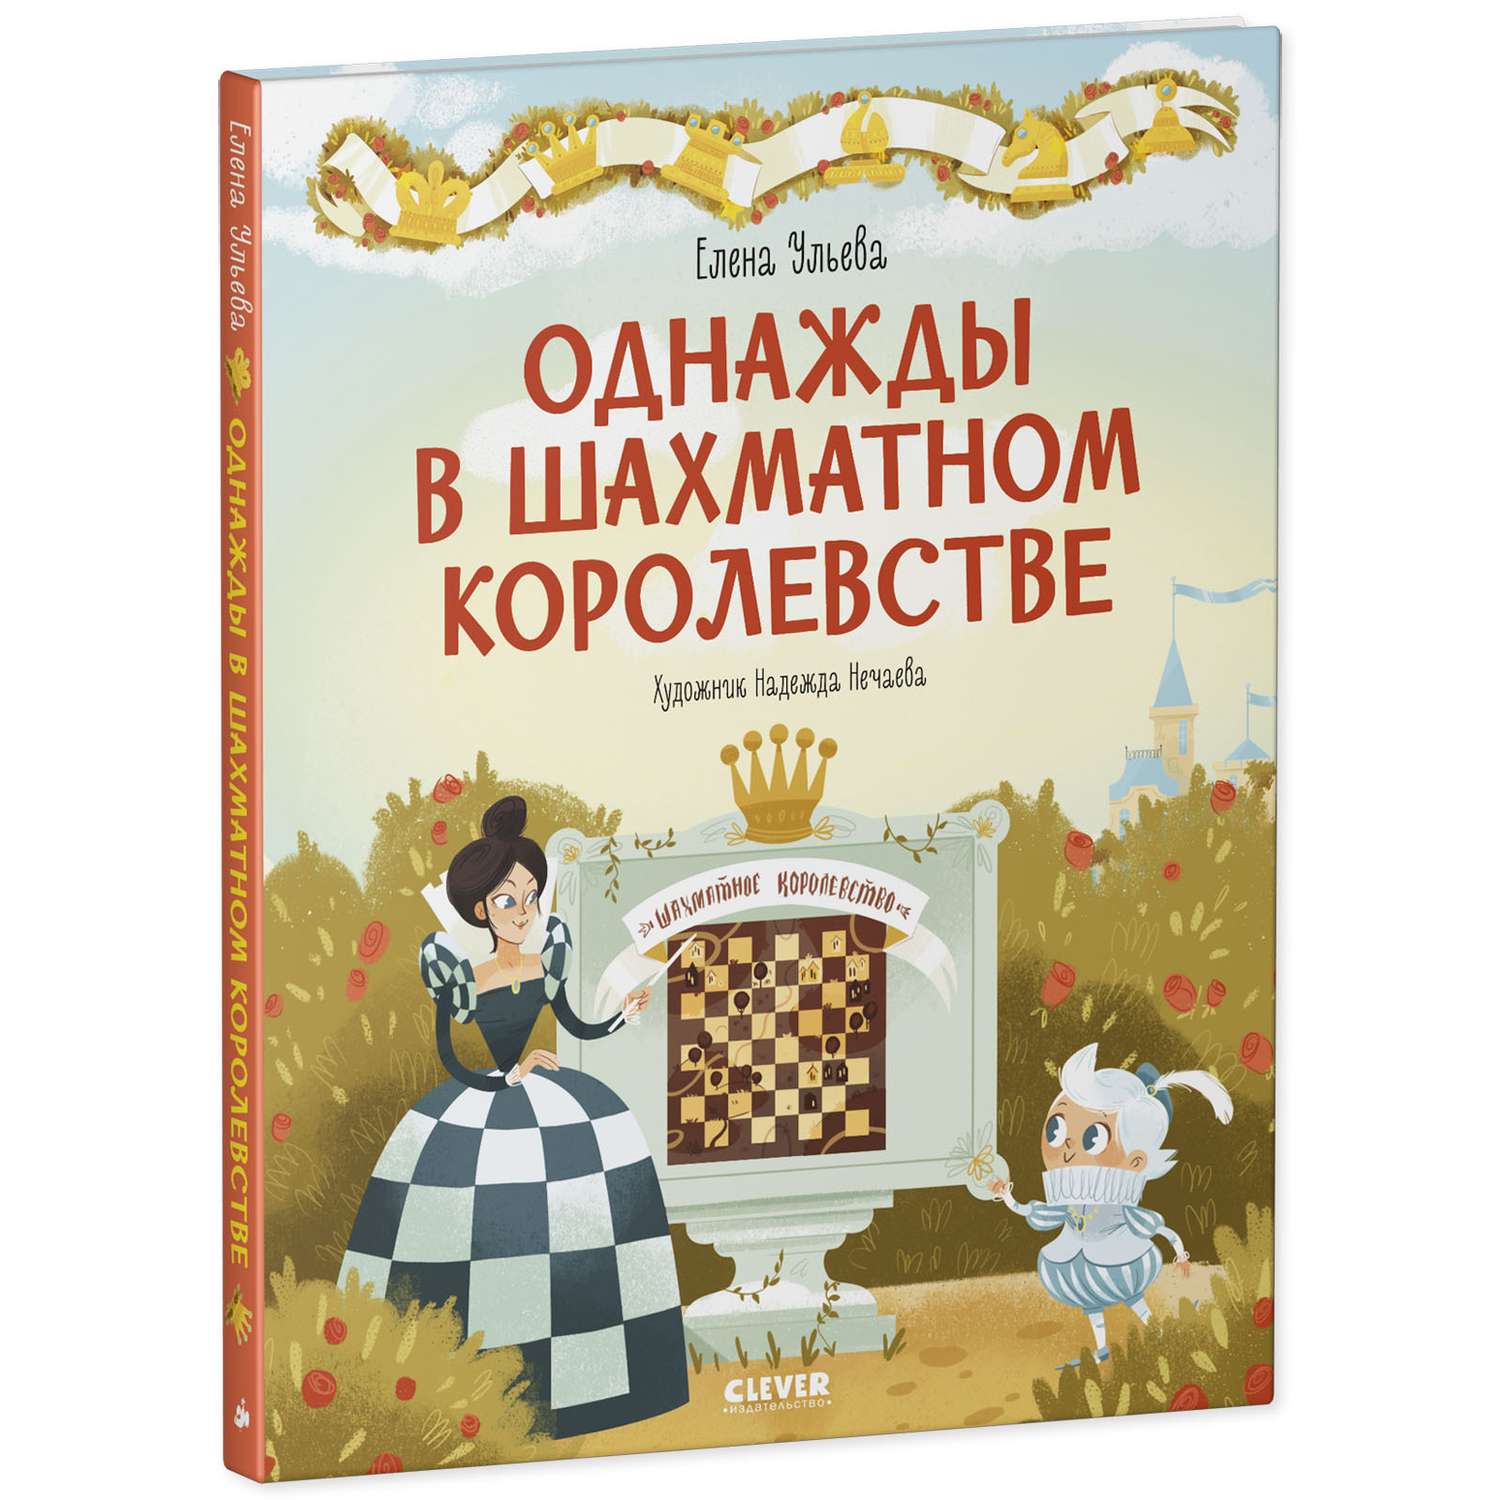 Книга Clever Издательство Однажды в шахматном королевстве - фото 2